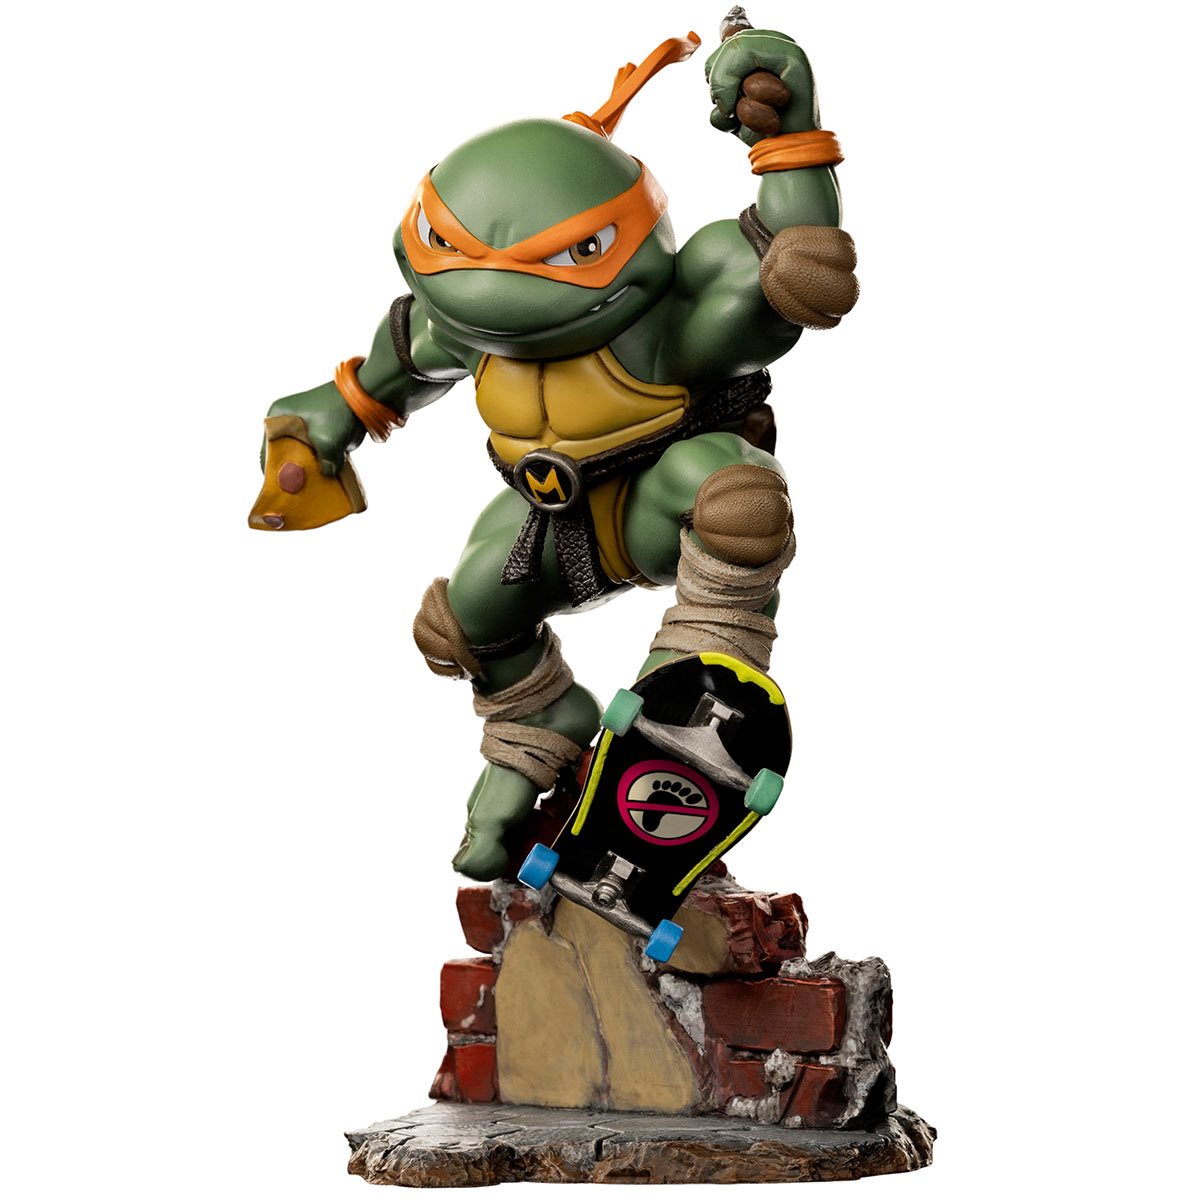 MiniCo. Vinyl Figure: Teenage Mutant Ninja Turtles - Michelangelo